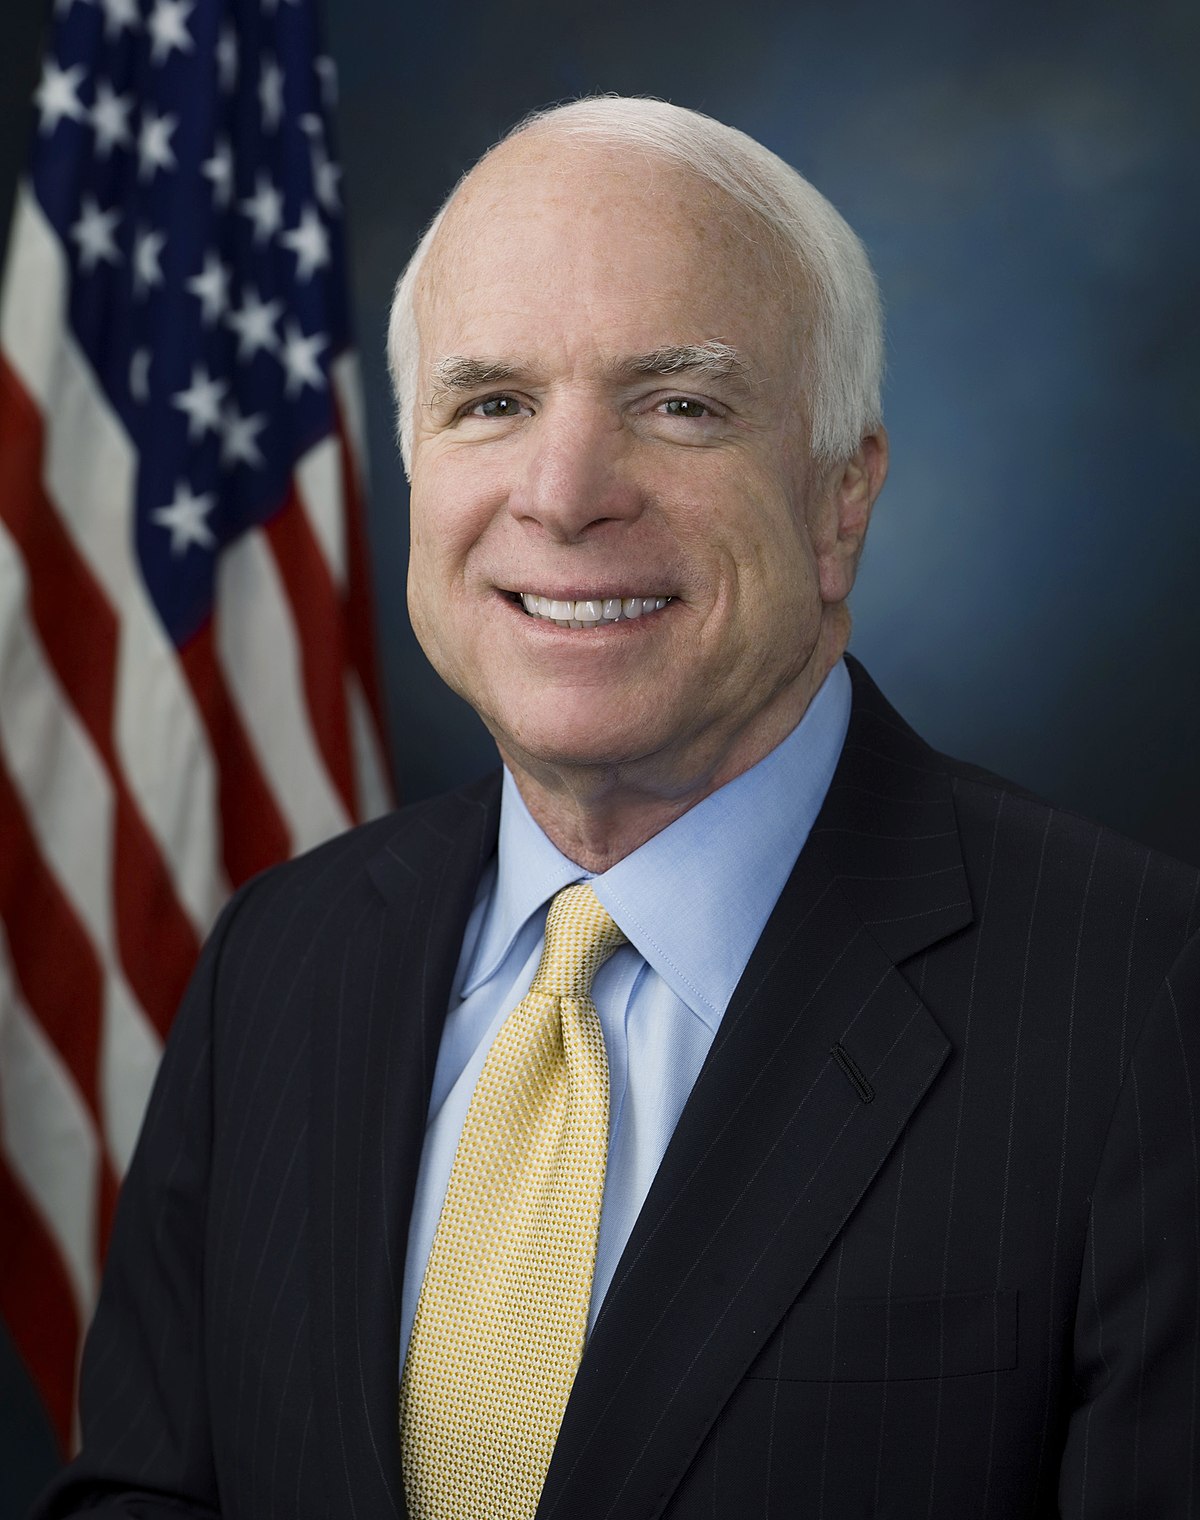 John McCain's official Senate portrait, taken in 2009